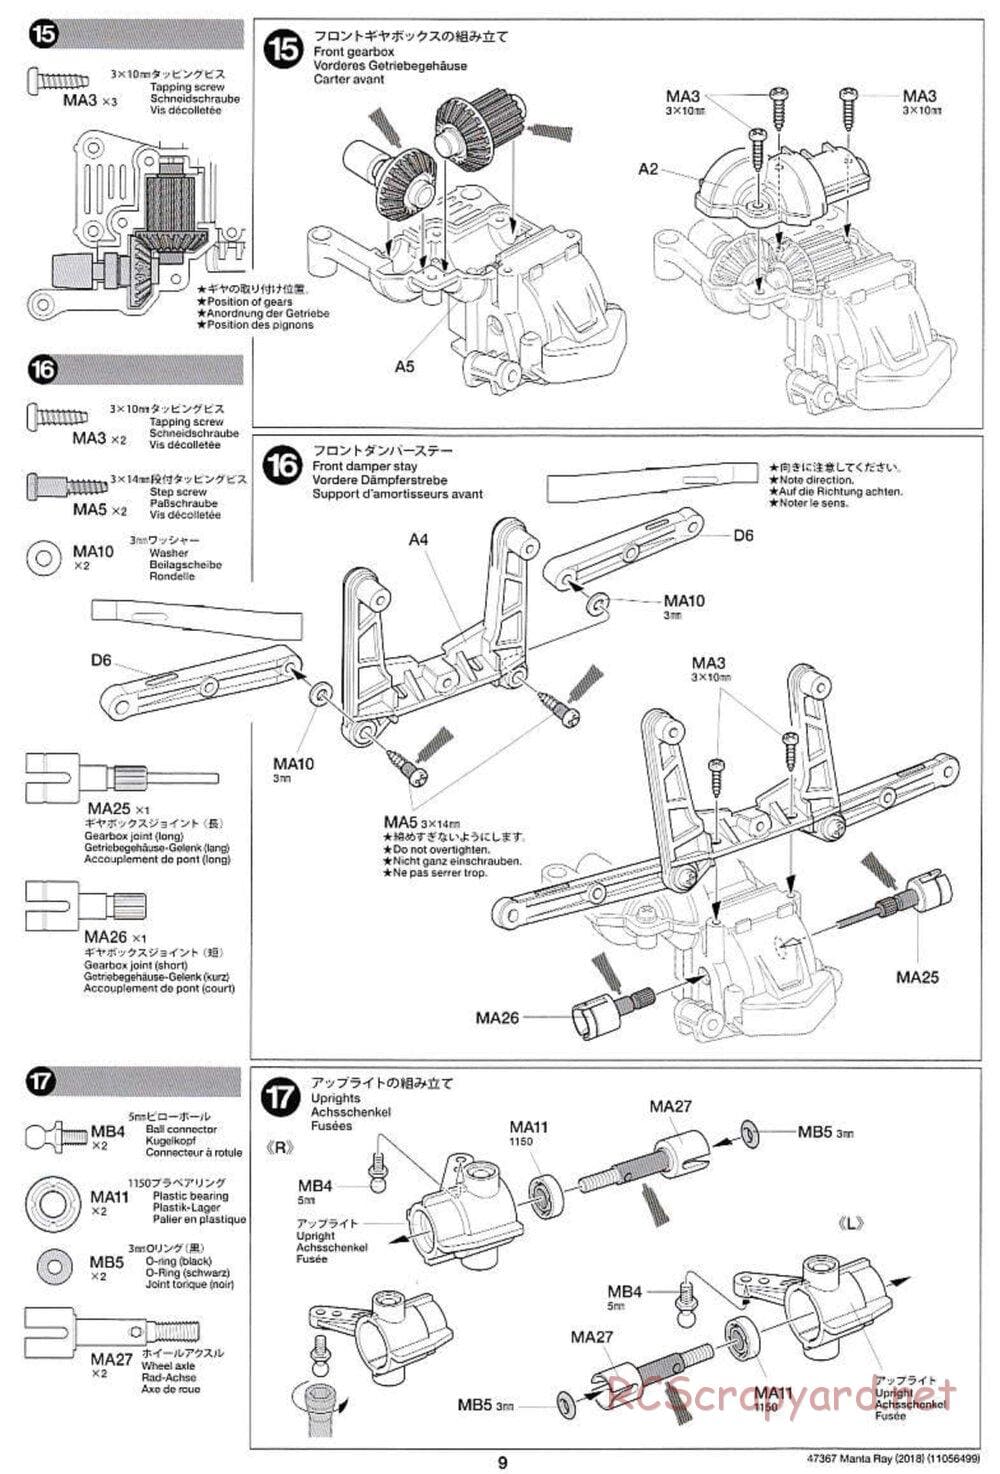 Tamiya - Manta Ray 2018 - DF-01 Chassis - Manual - Page 9